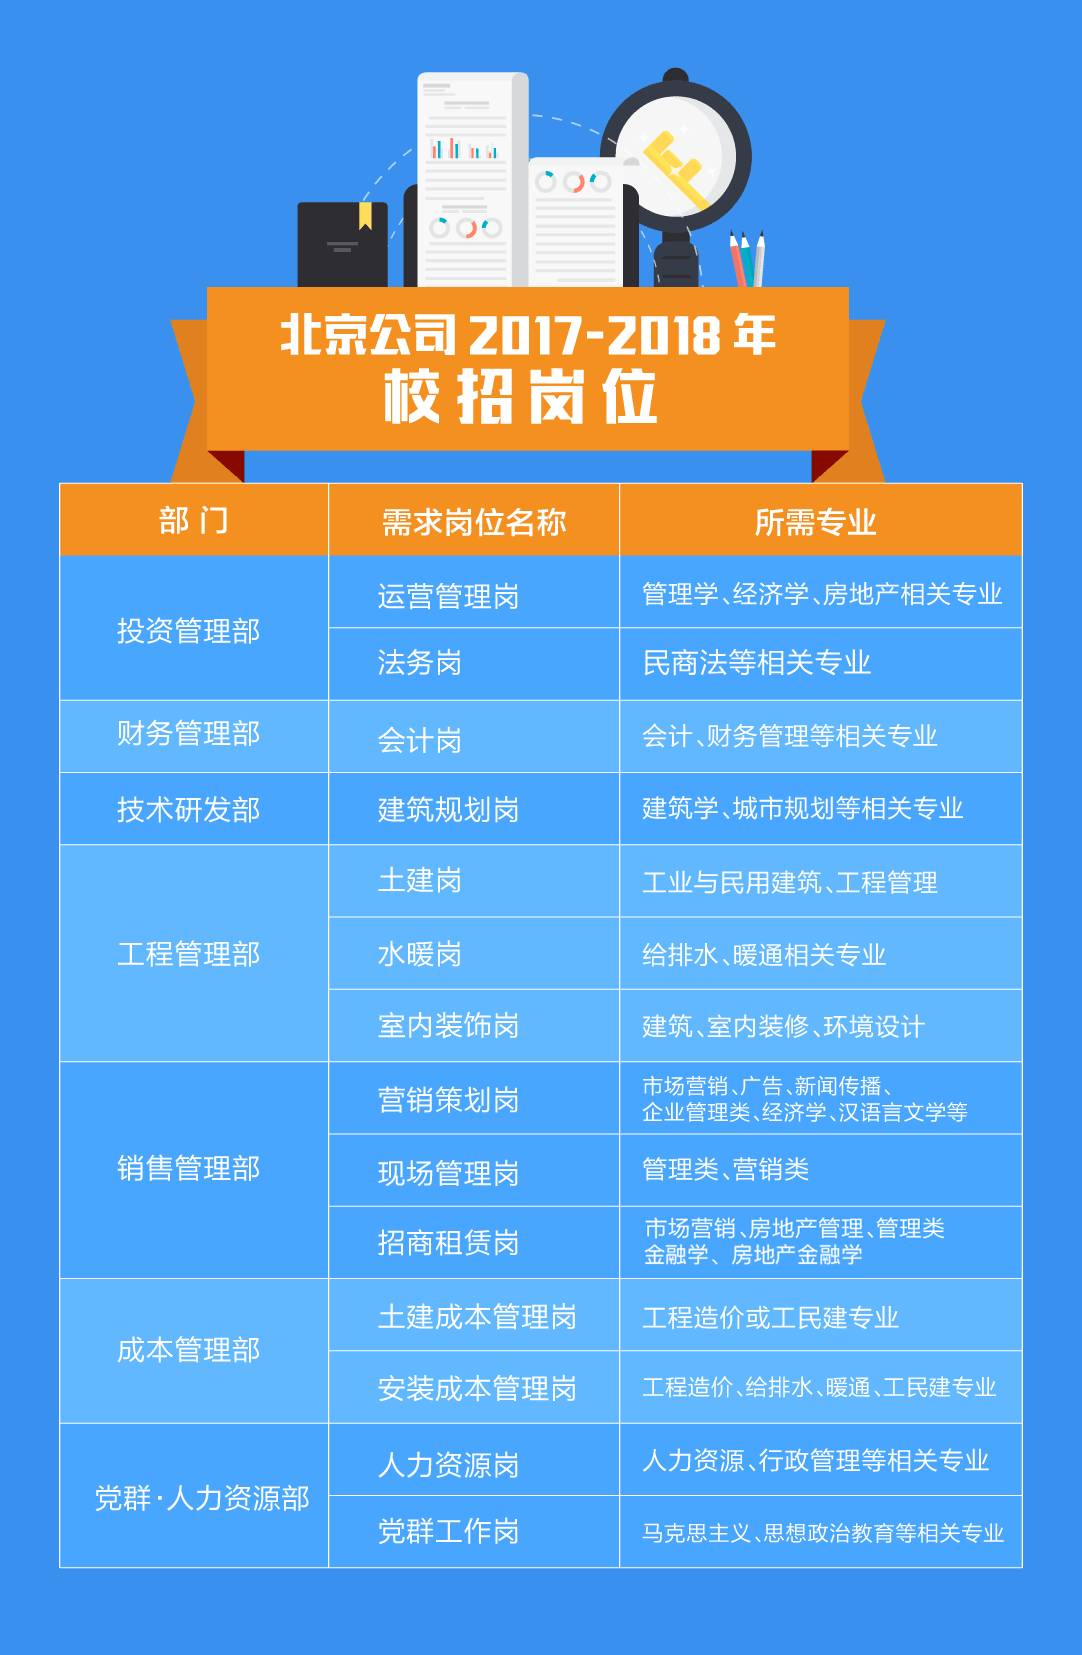 2018年度保利地产北京公司校园招聘正式